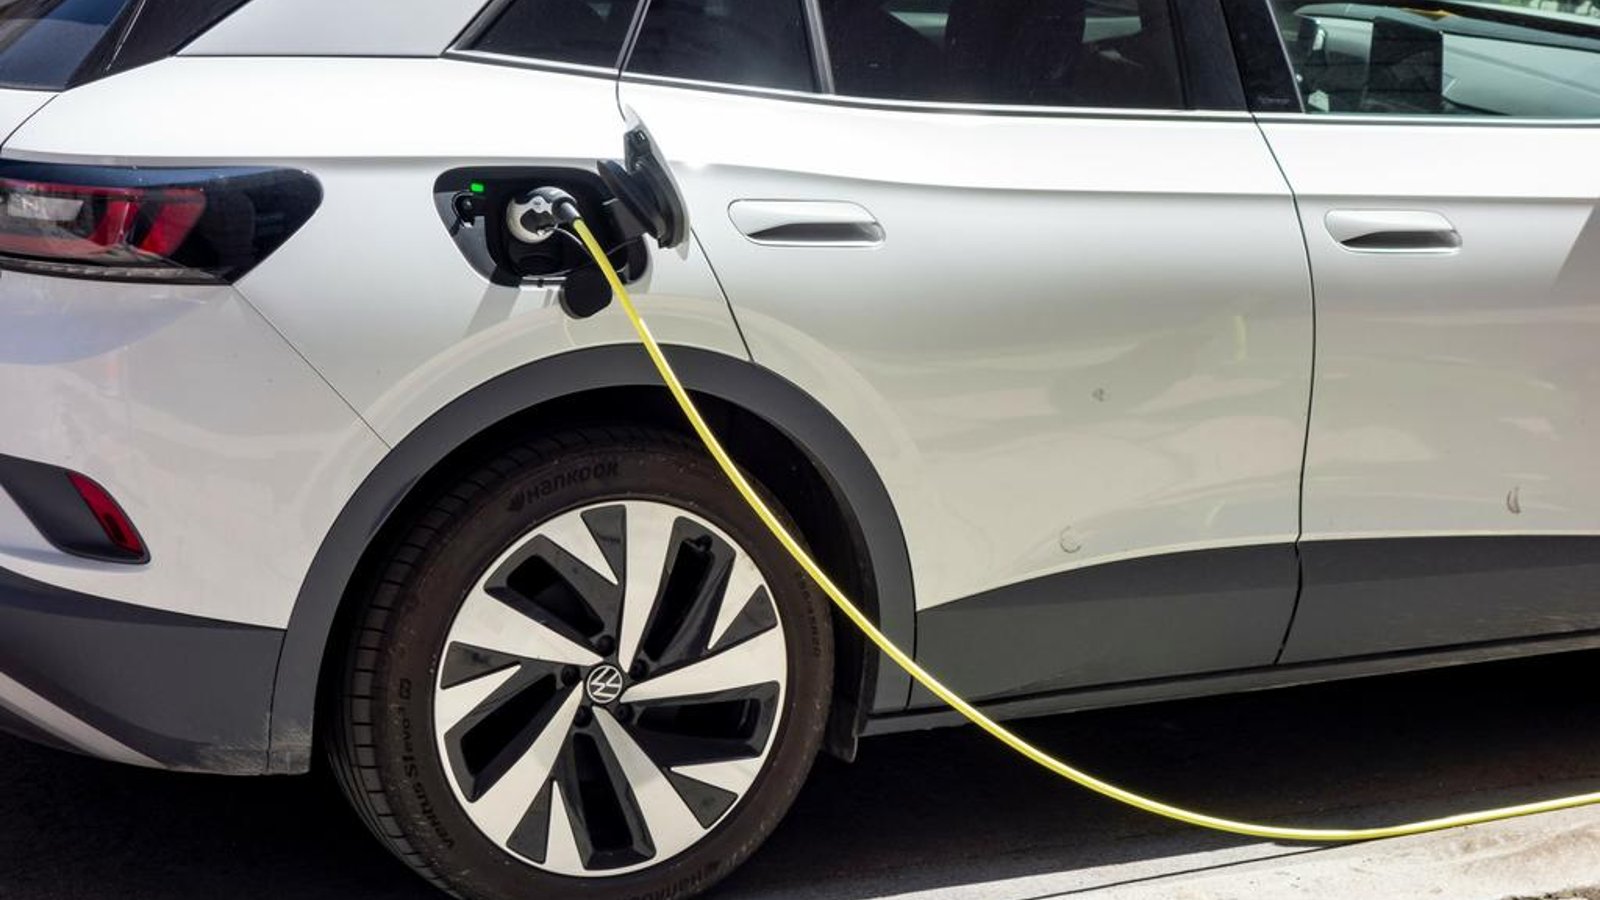 Les ventes des véhicules électriques continuent d'augmenter mais plus lentement